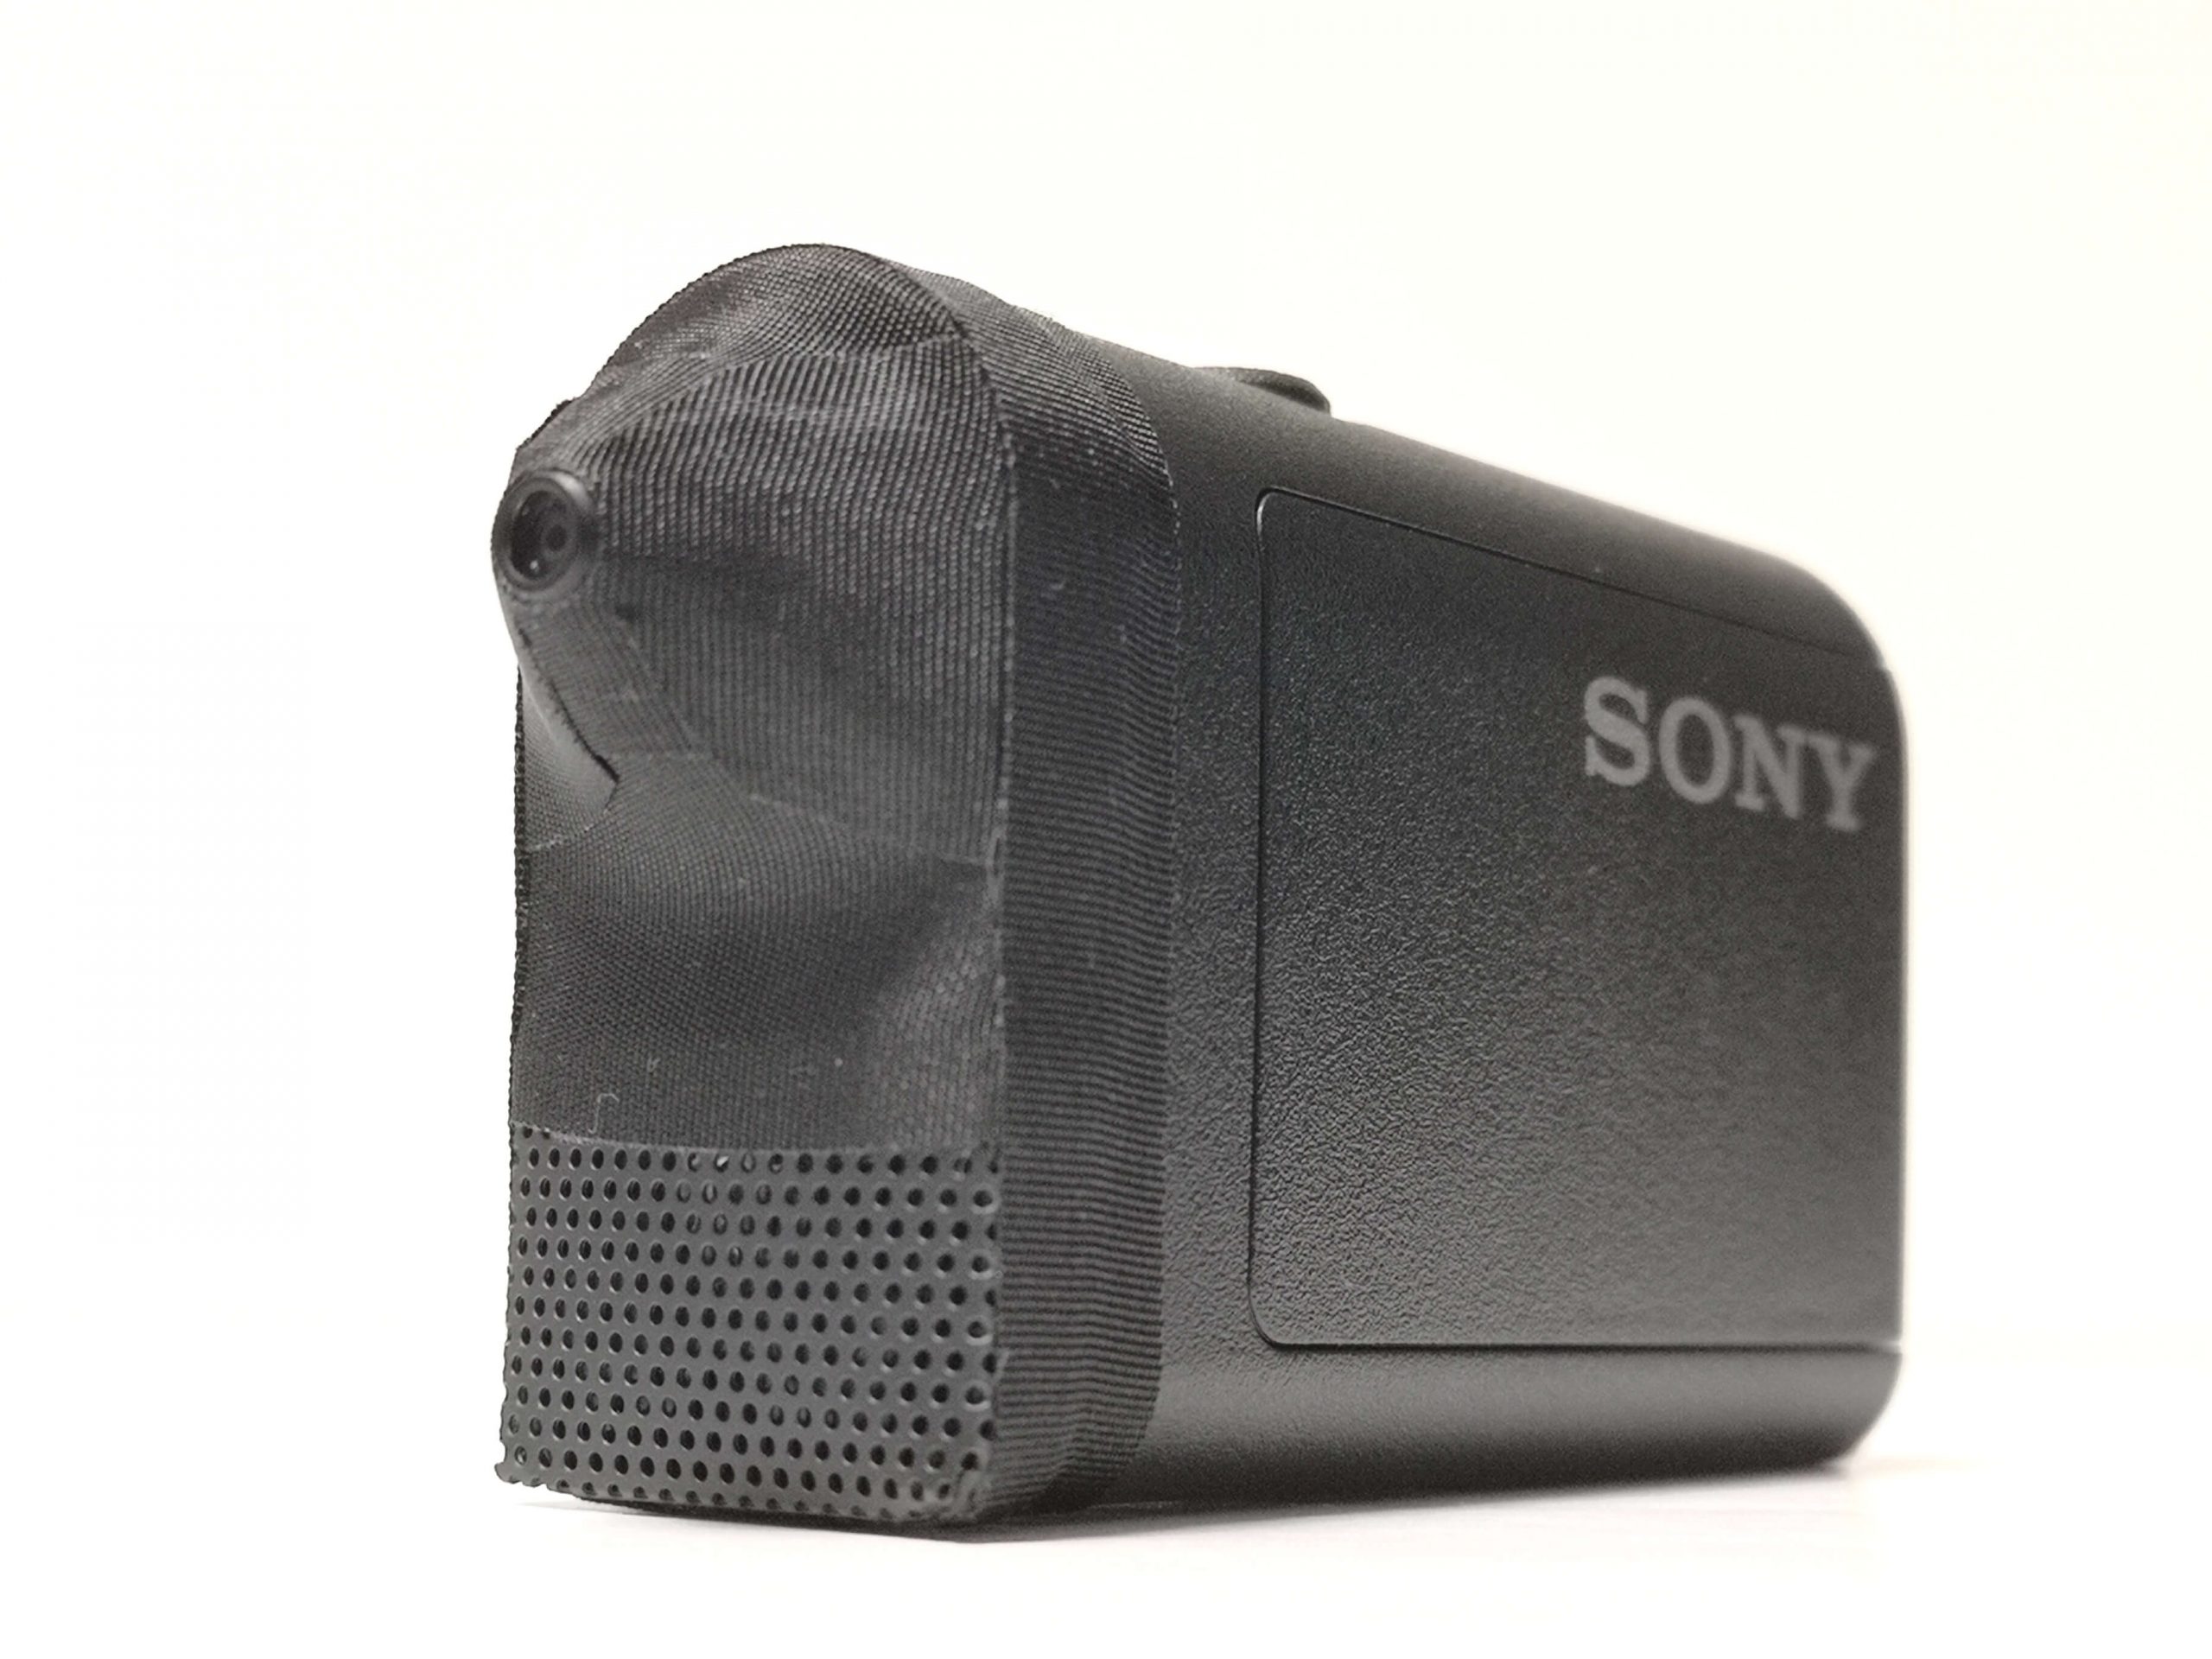 M12カスタム】SONY HDR-AS50 ピンホールカメラ仕様 - M12camera